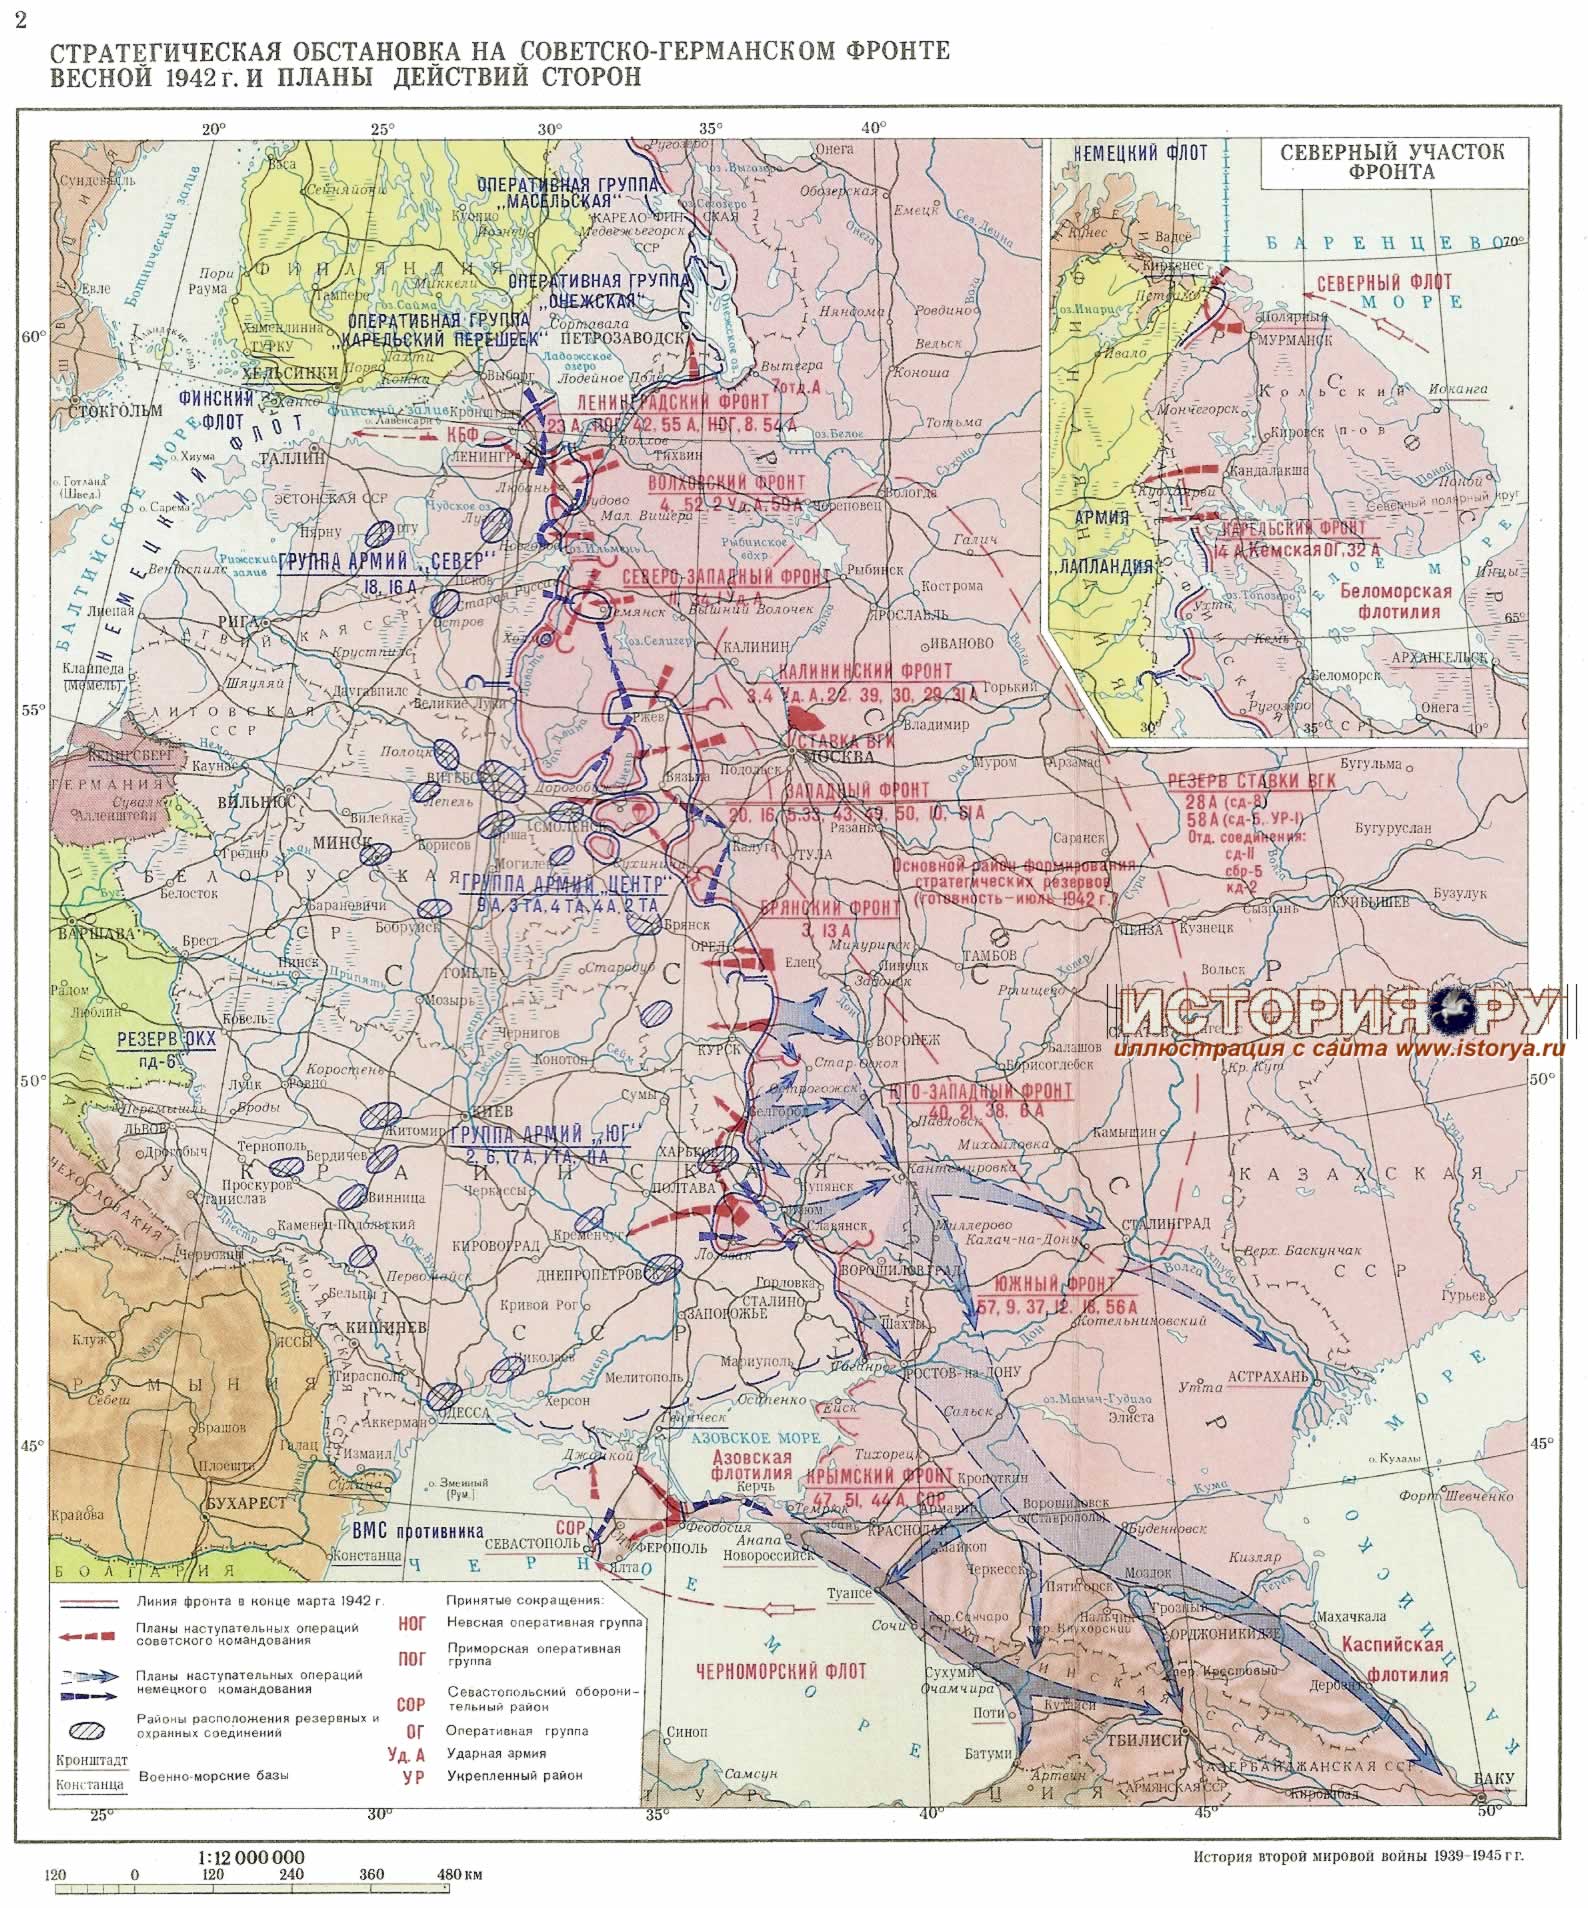 Стратегическая обстановка на советстко-германском фронте весной 1942 года и планы действий сторон